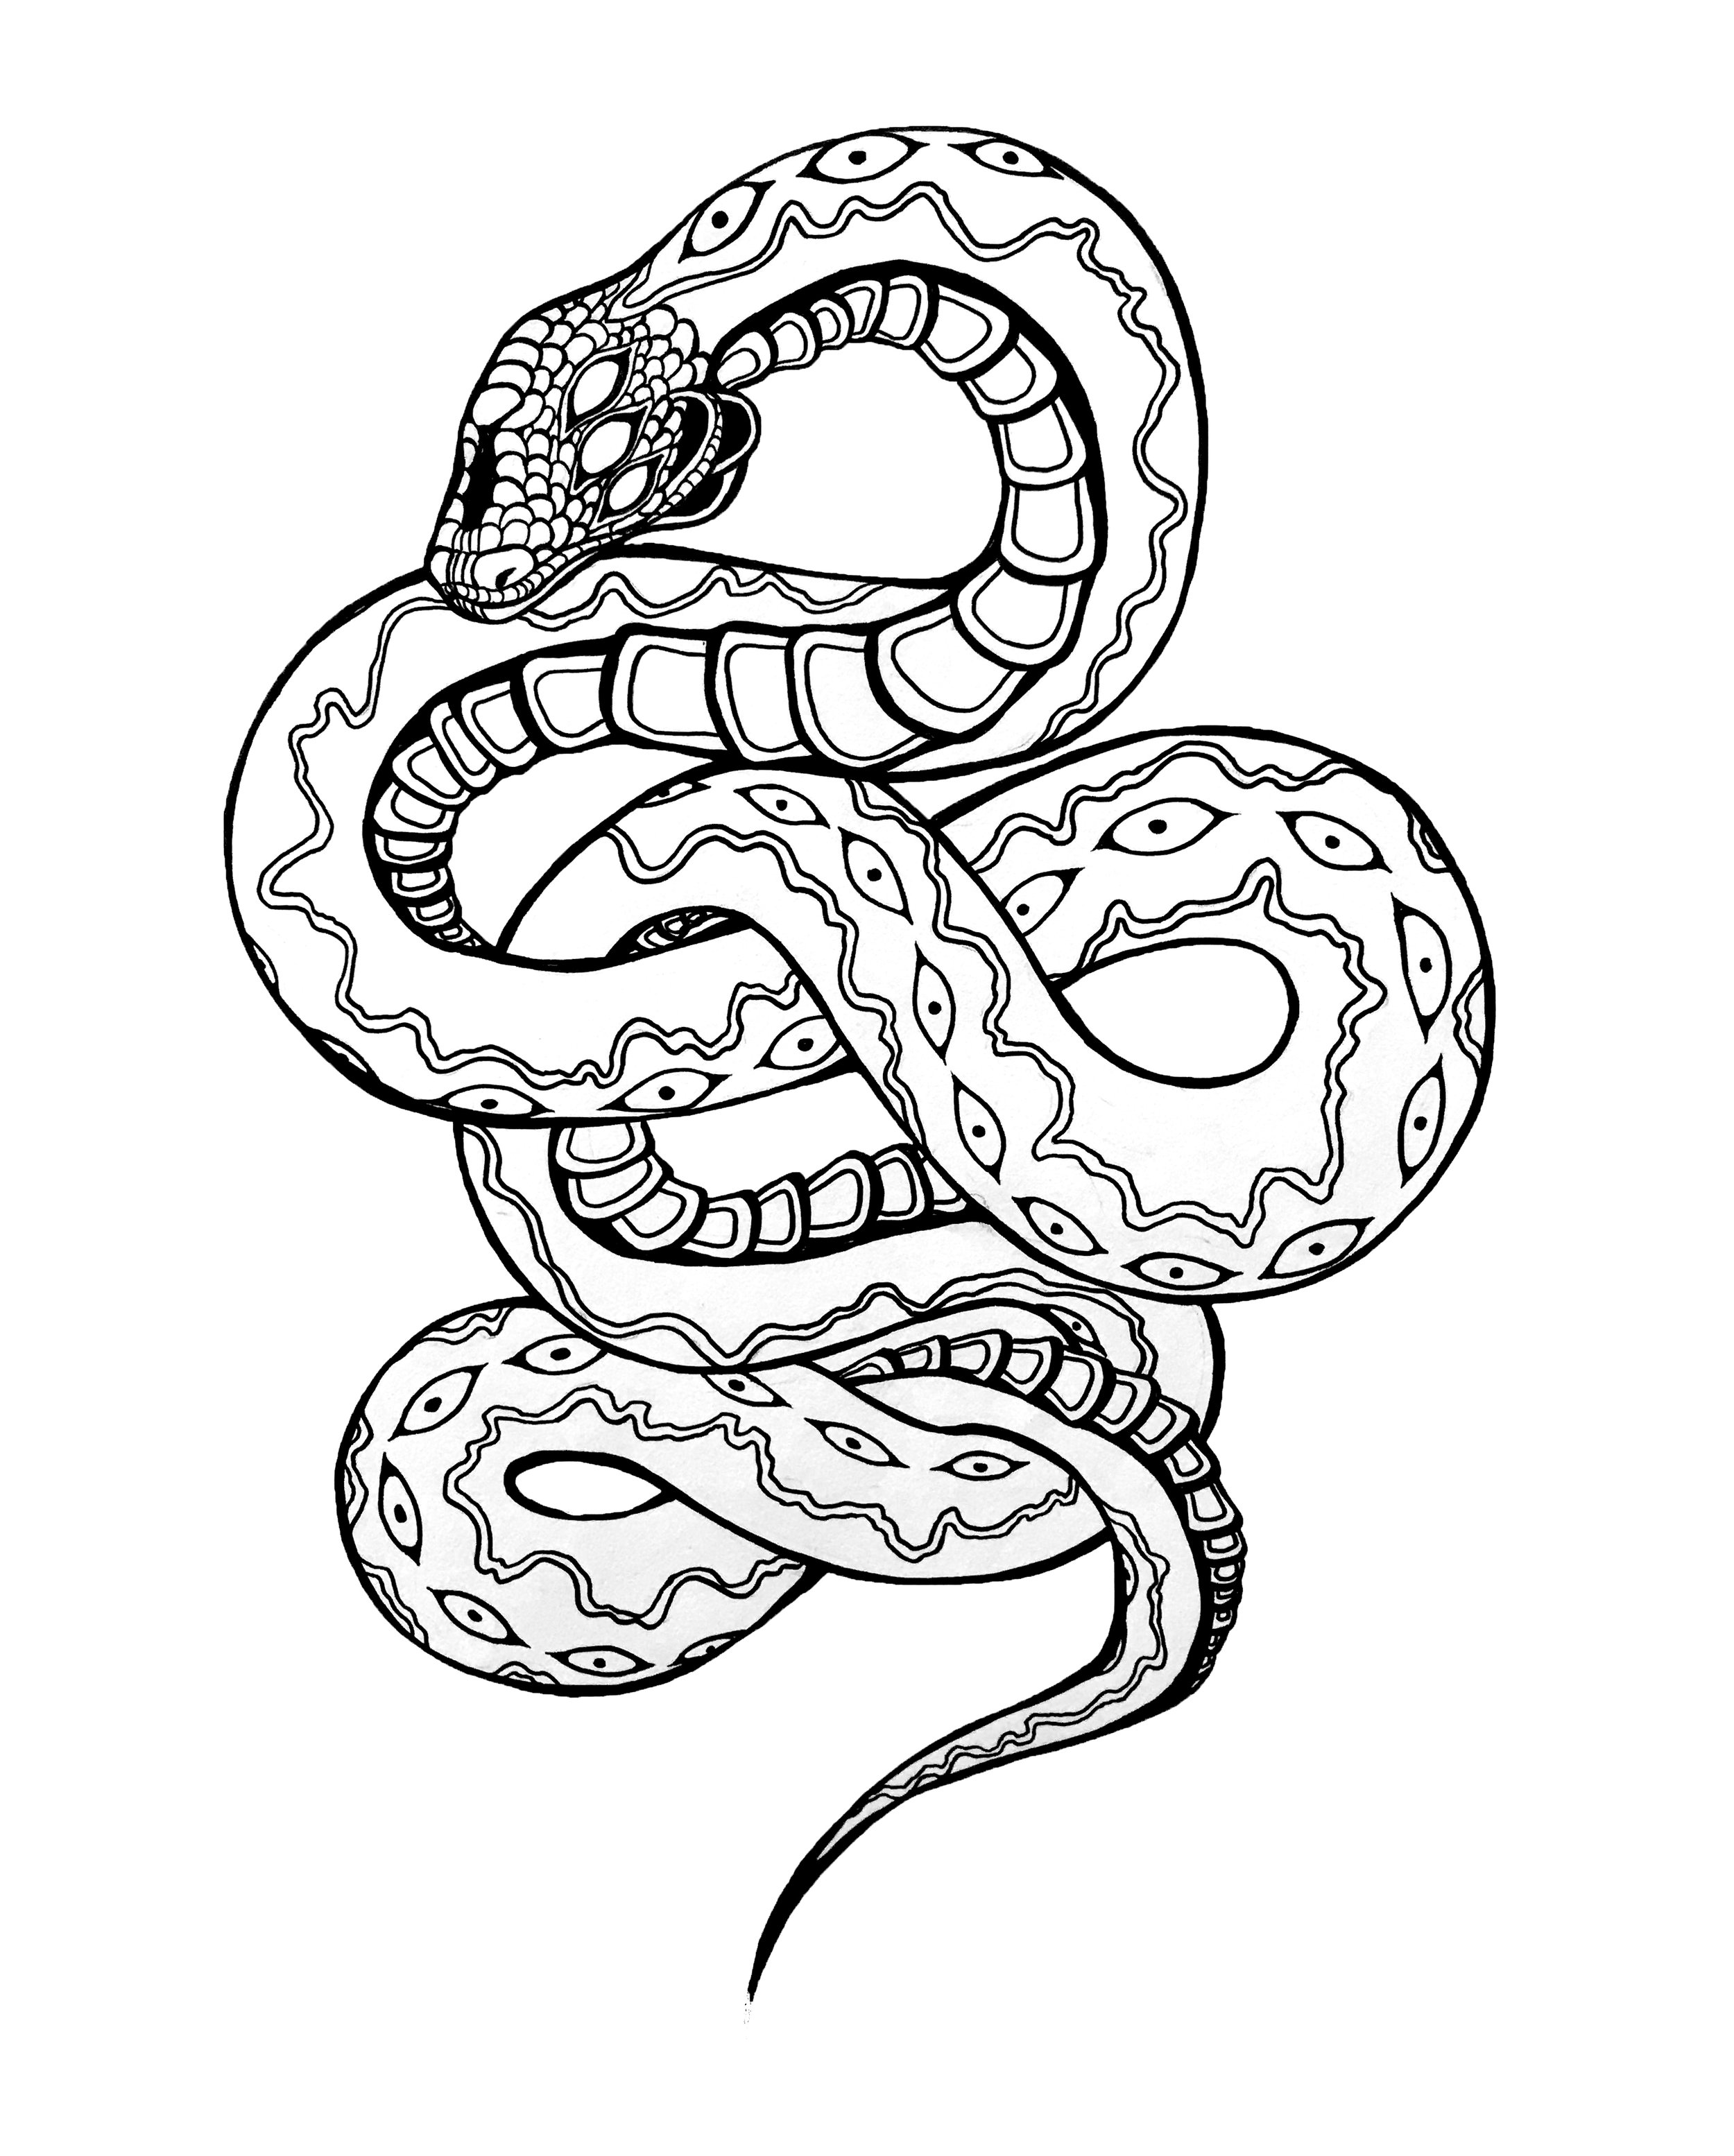 Snake 2.jpg